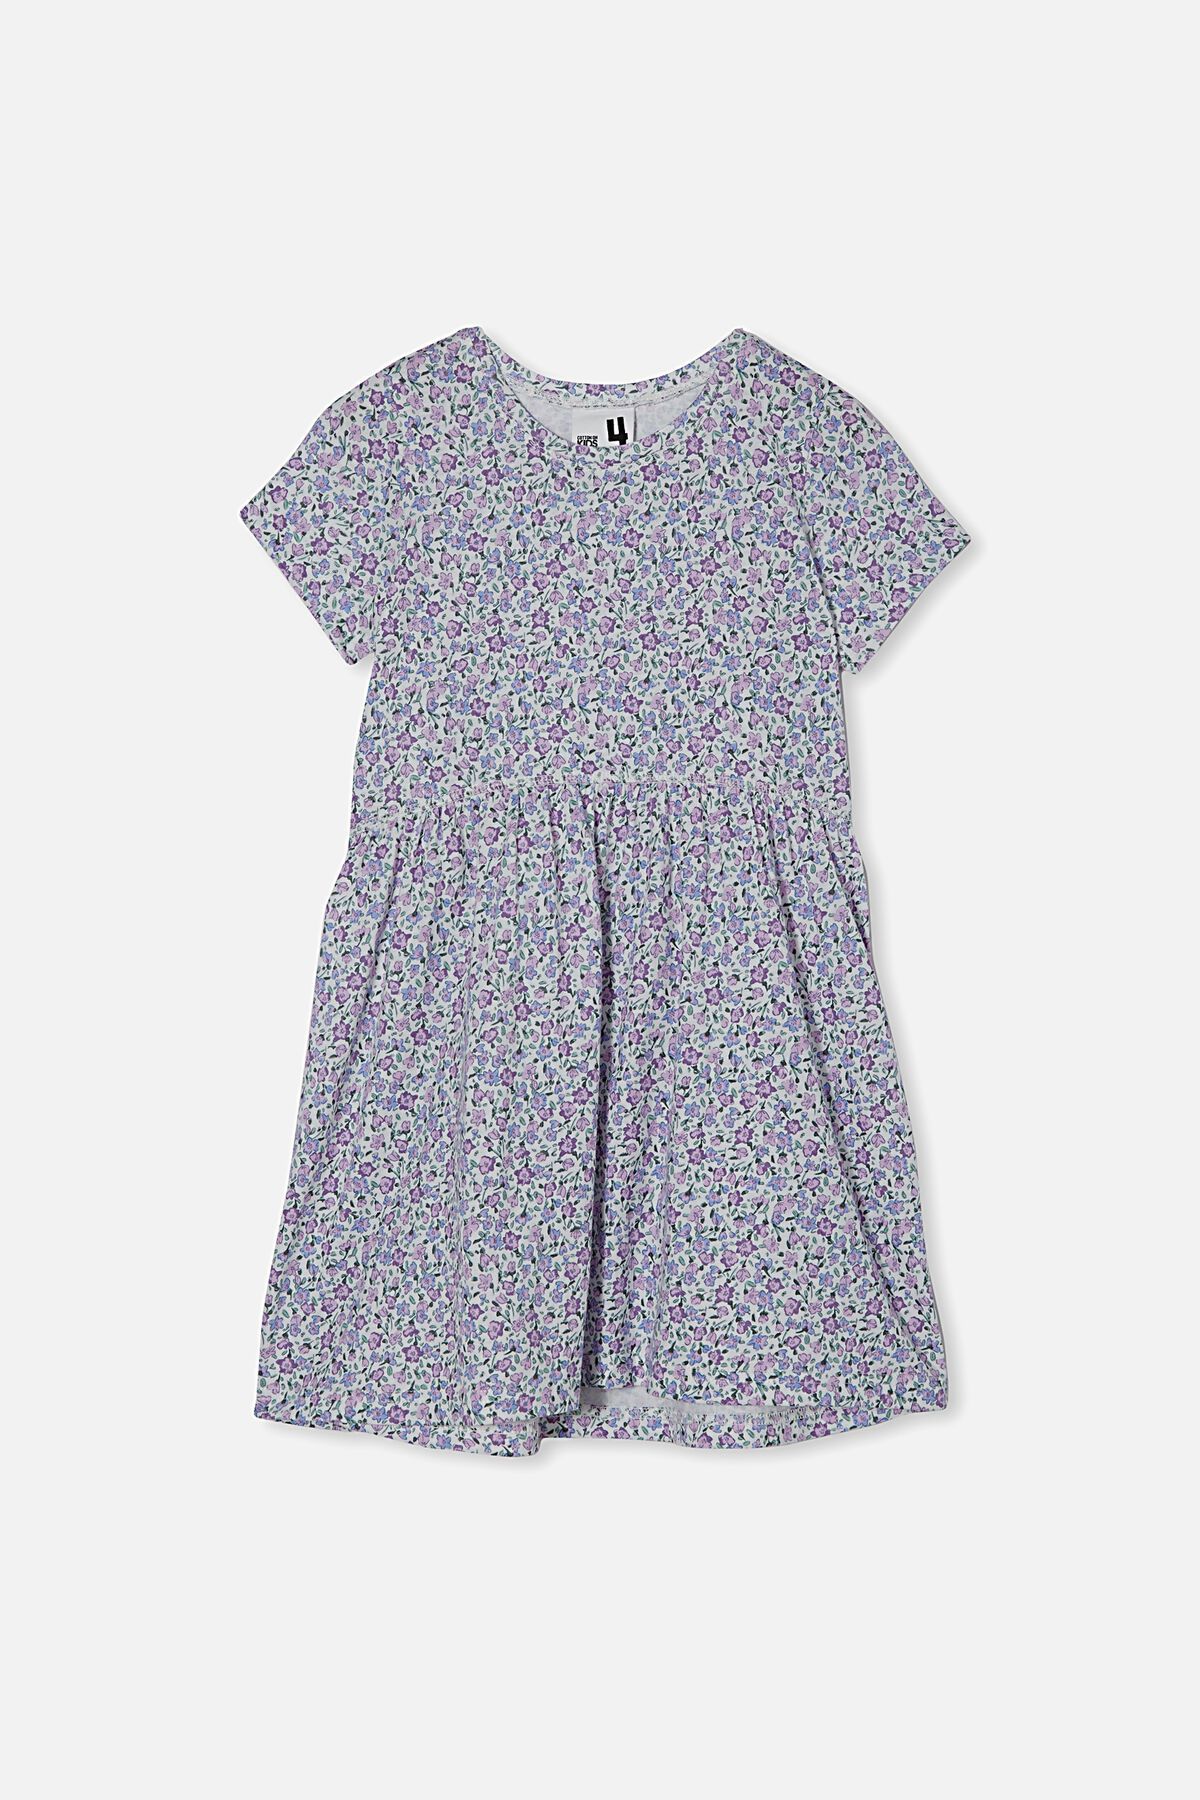 Freya Short Sleeve Dress | Cotton On (ANZ)